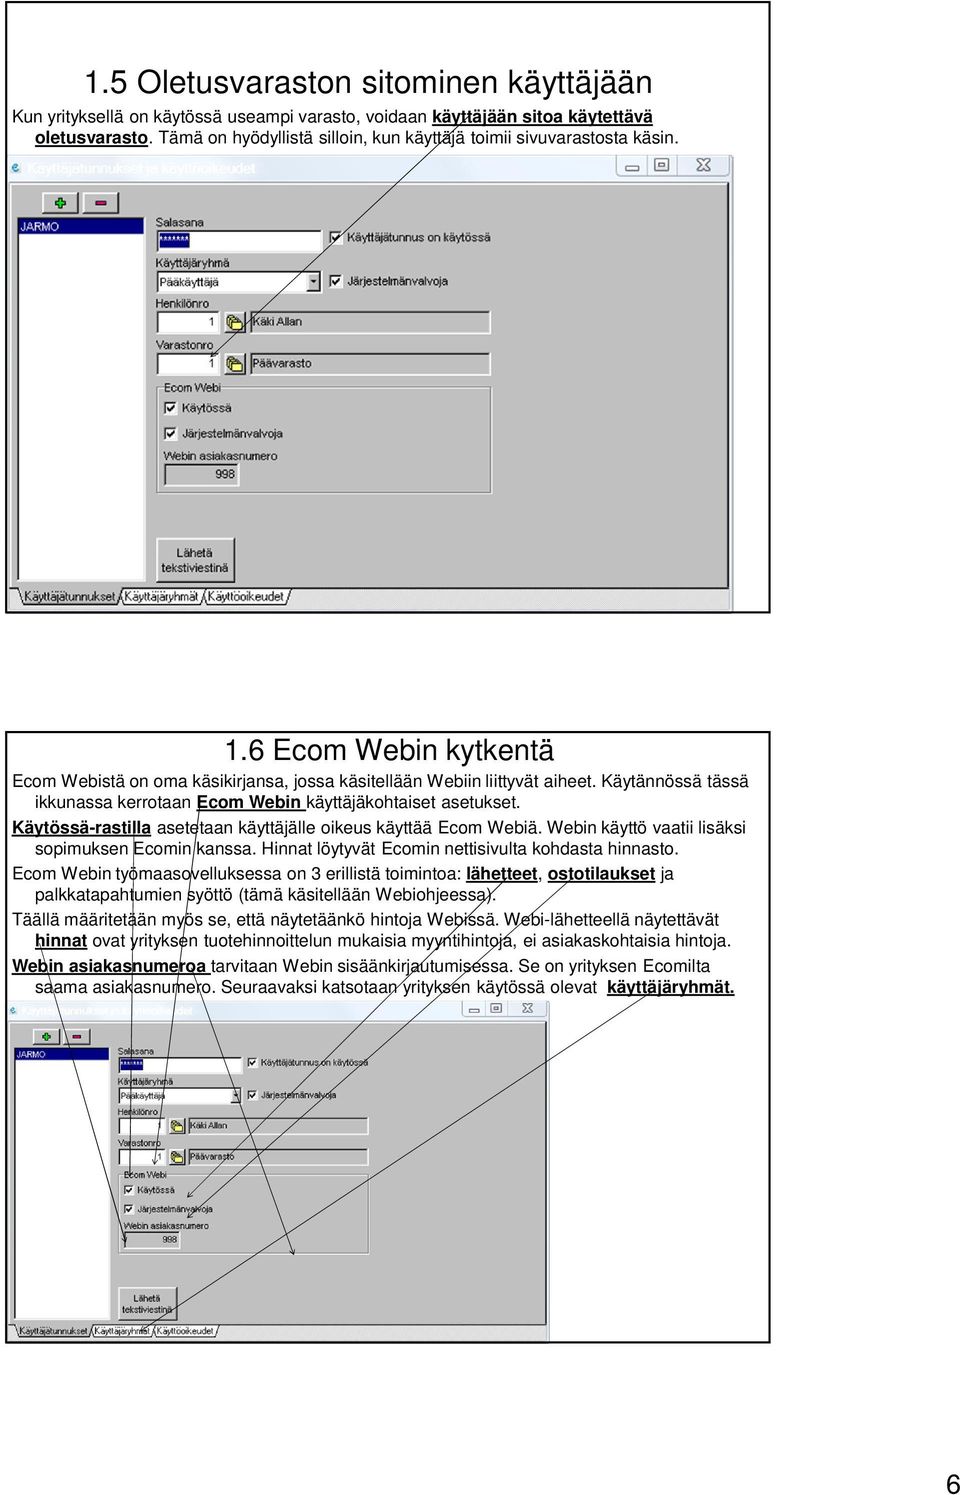 Käytännössä tässä ikkunassa kerrotaan Ecom Webin käyttäjäkohtaiset asetukset. Käytössä-rastilla asetetaan käyttäjälle oikeus käyttää Ecom Webiä. Webin käyttö vaatii lisäksi sopimuksen Ecomin kanssa.